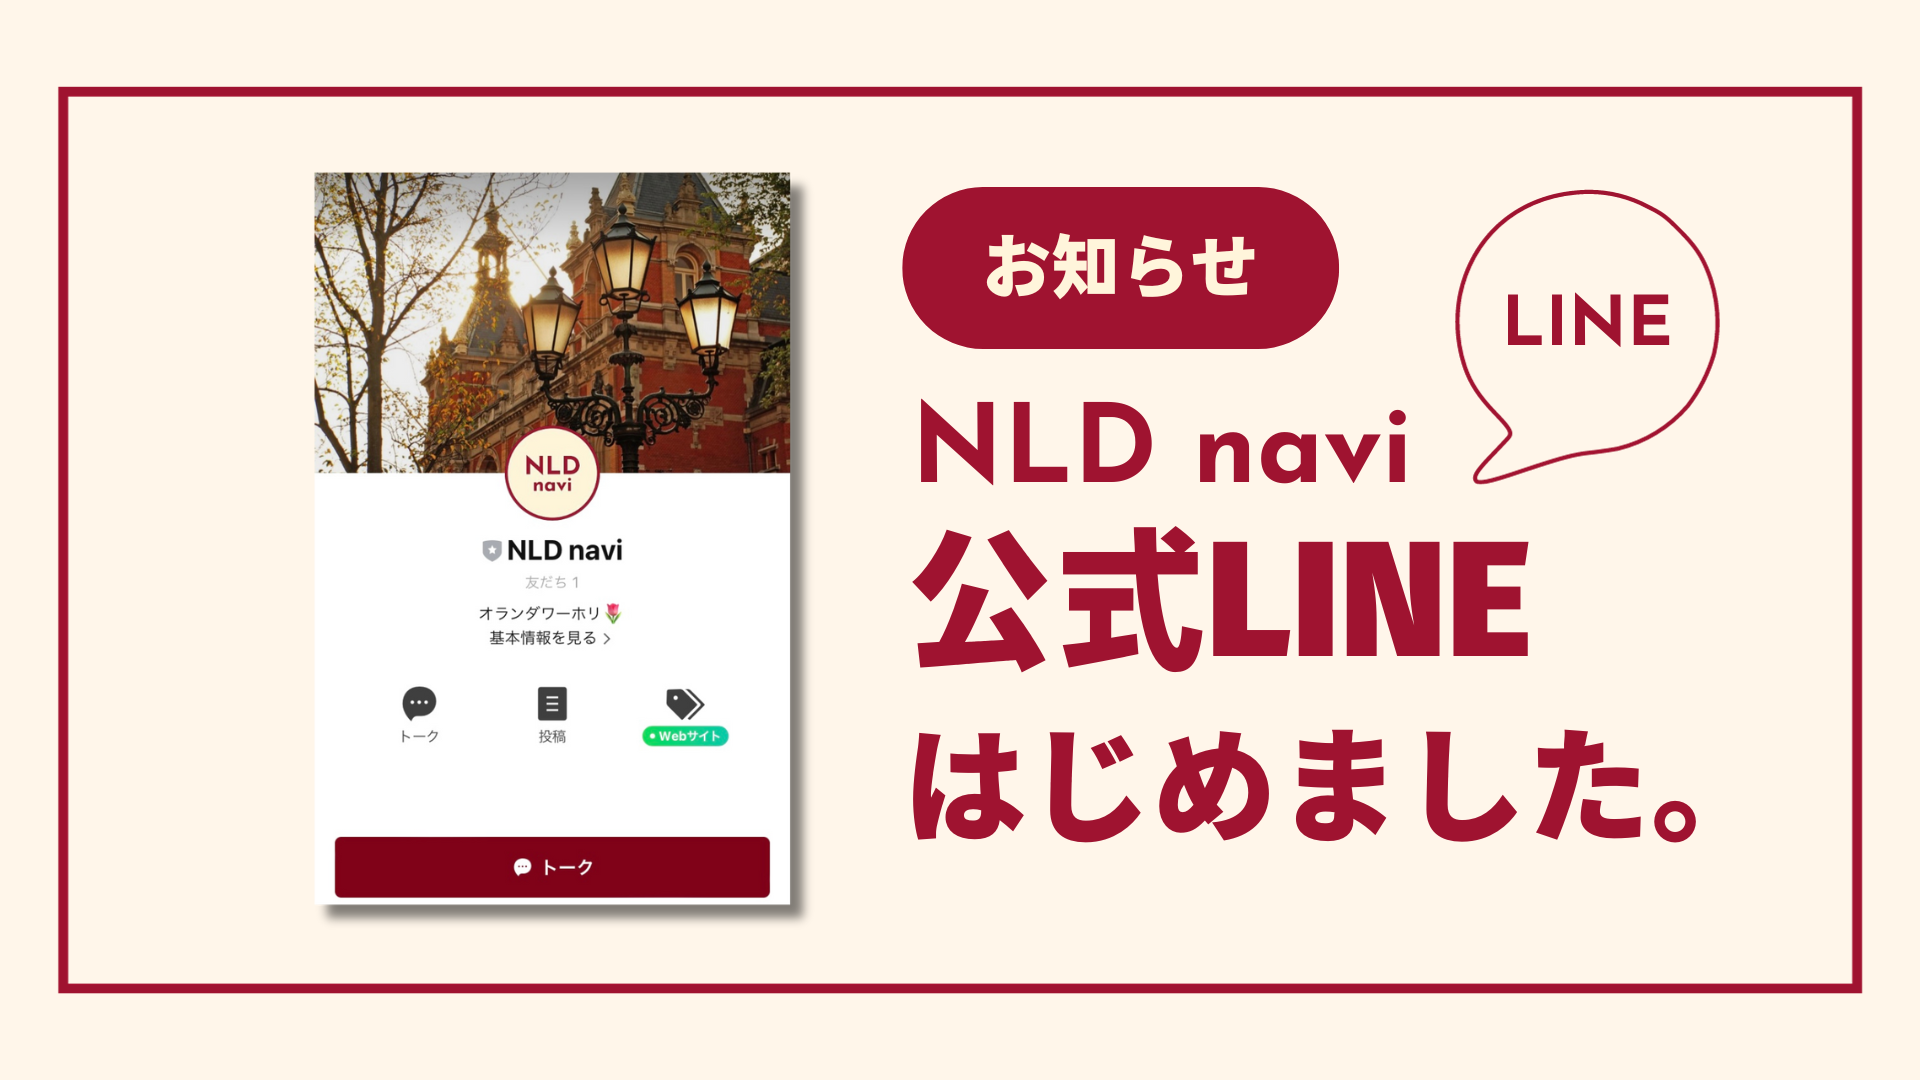 NLD navi official LINE